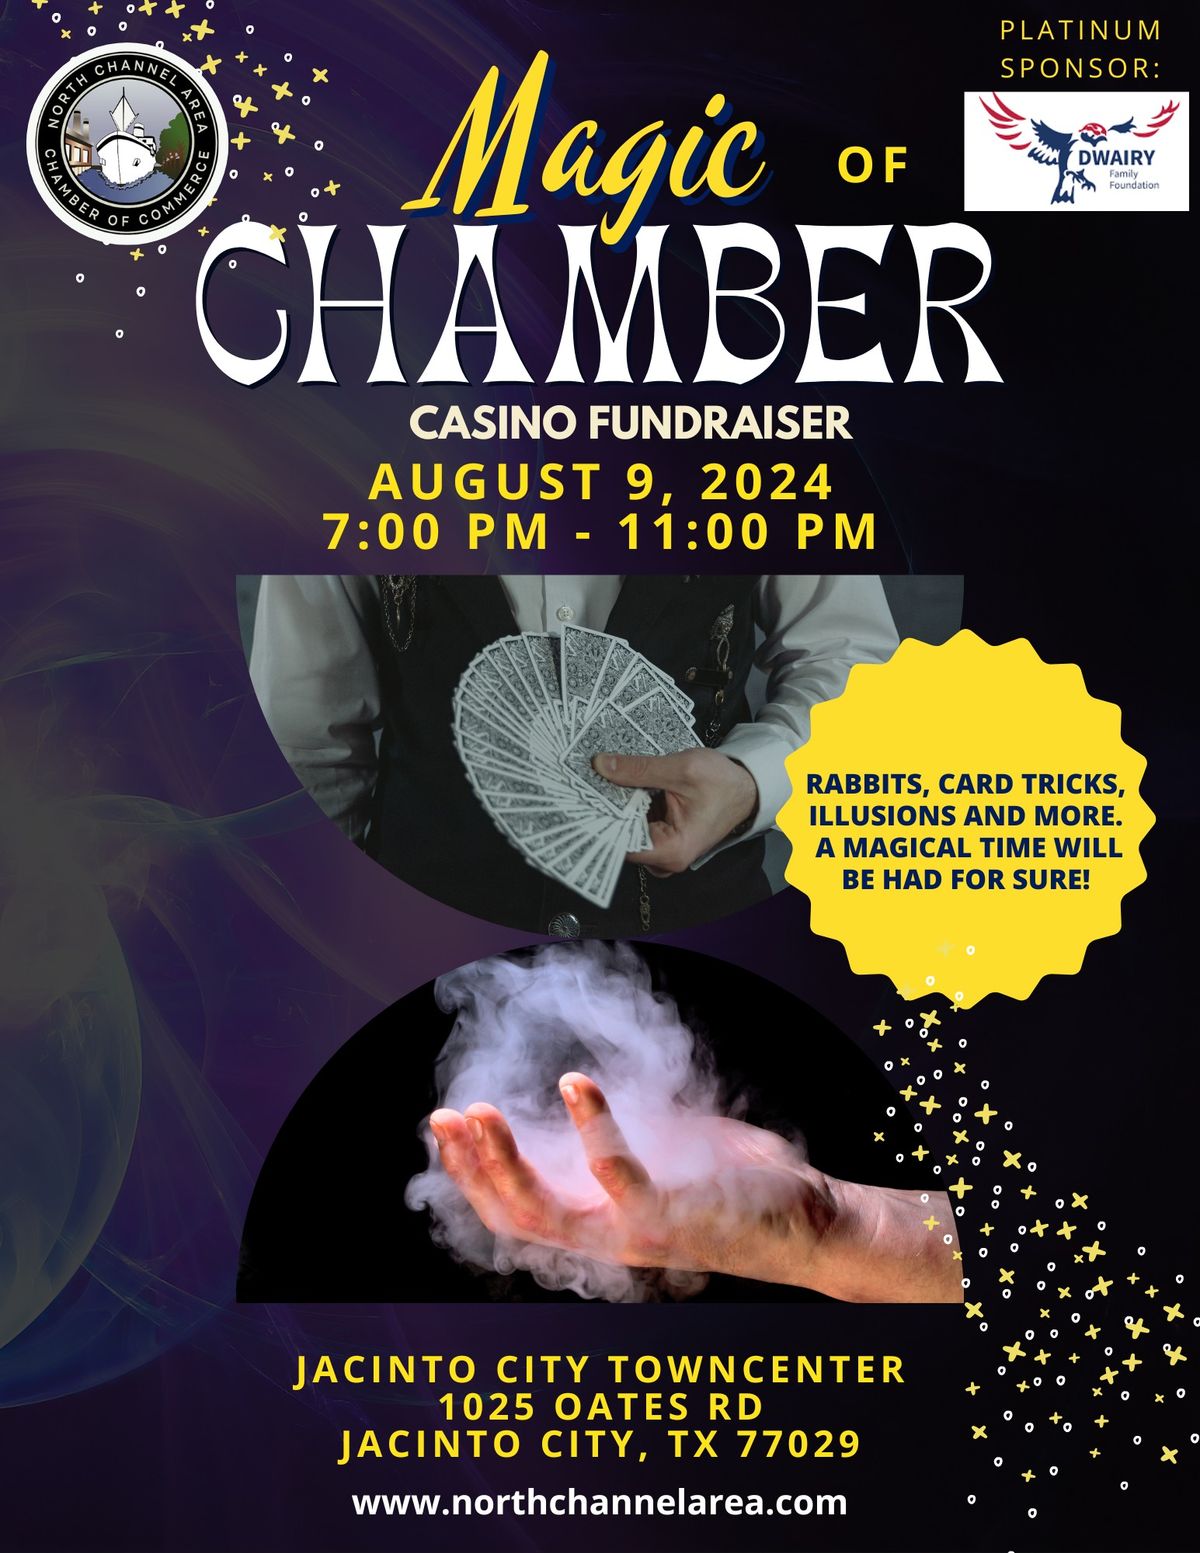 Magic of Chamber Casino Fundraiser